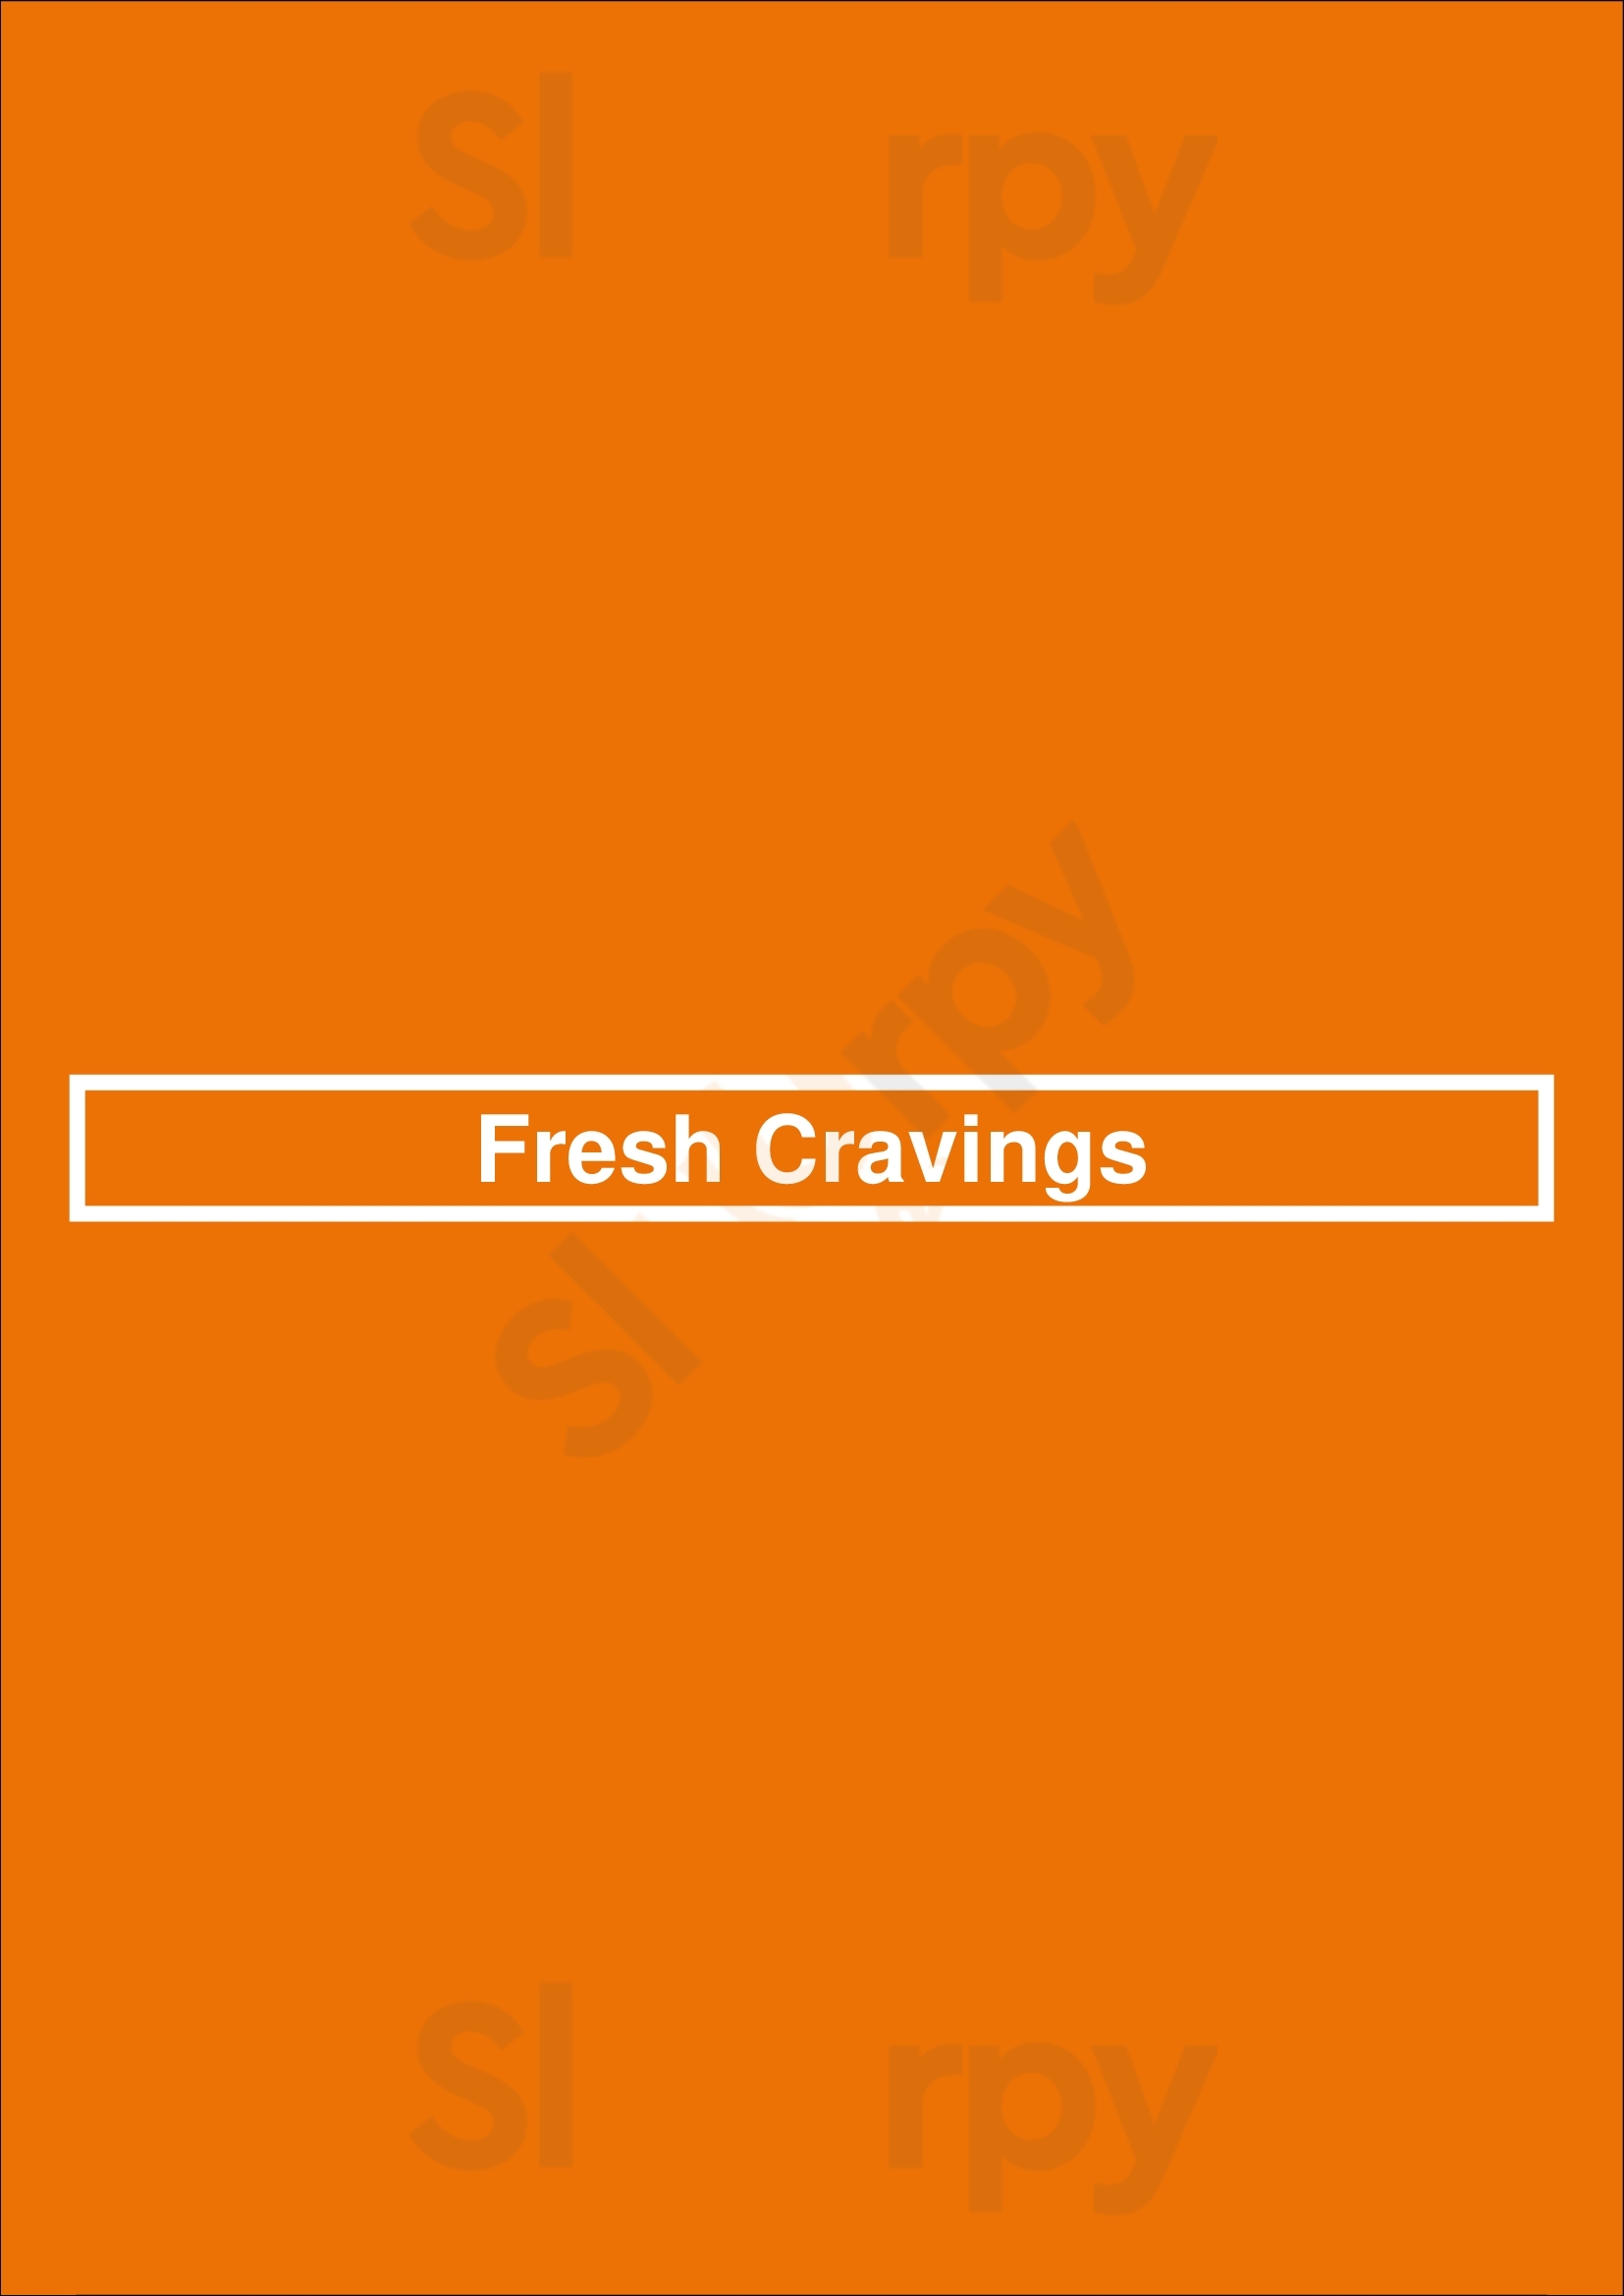 Fresh Cravings Delta Menu - 1